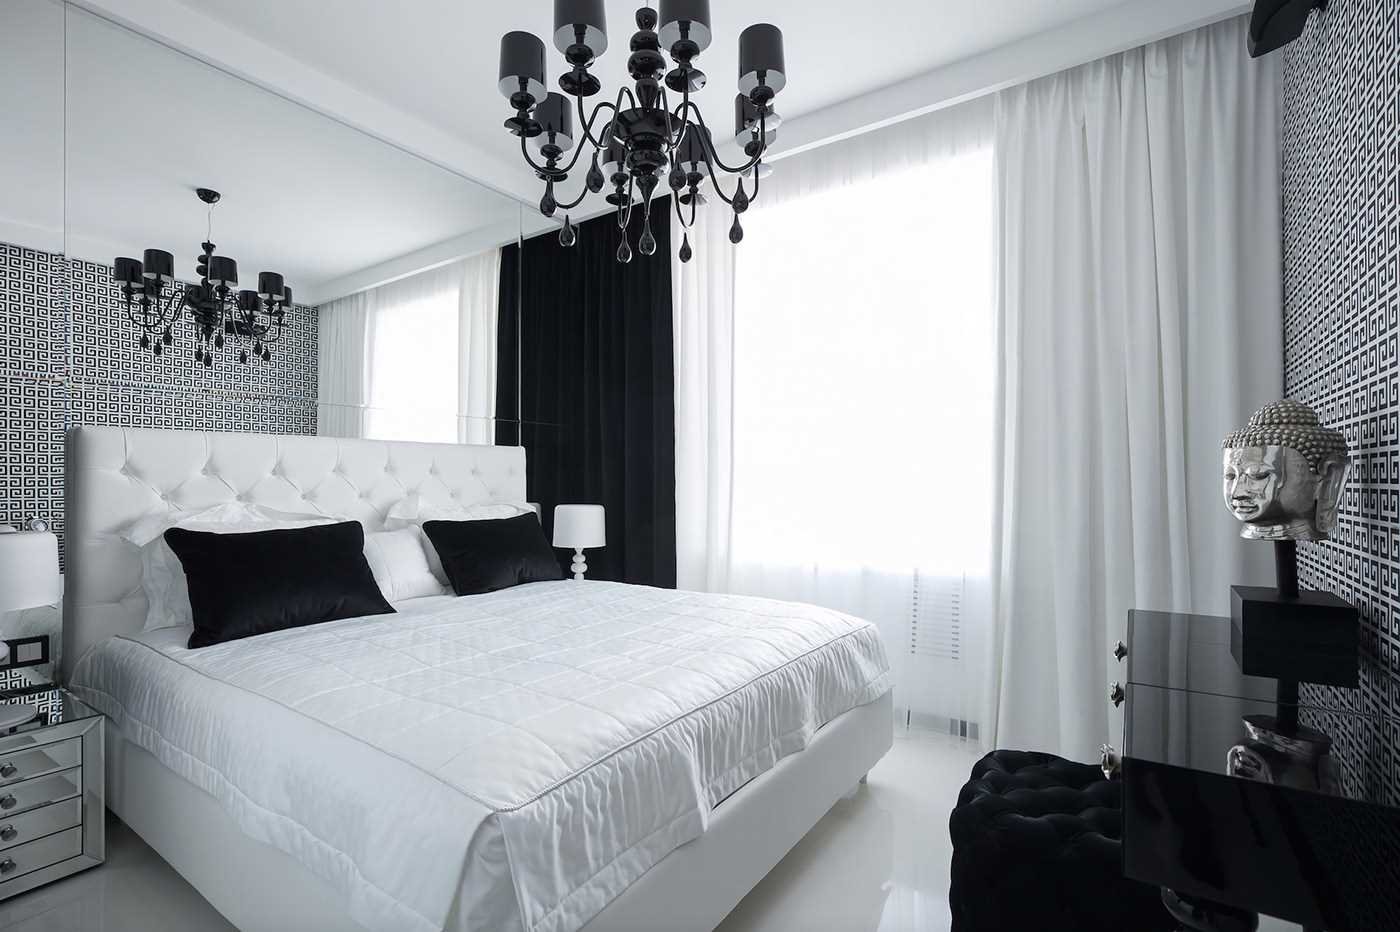 Правила оформления дизайна спальни в черно-белых тонах и стилевые особенности